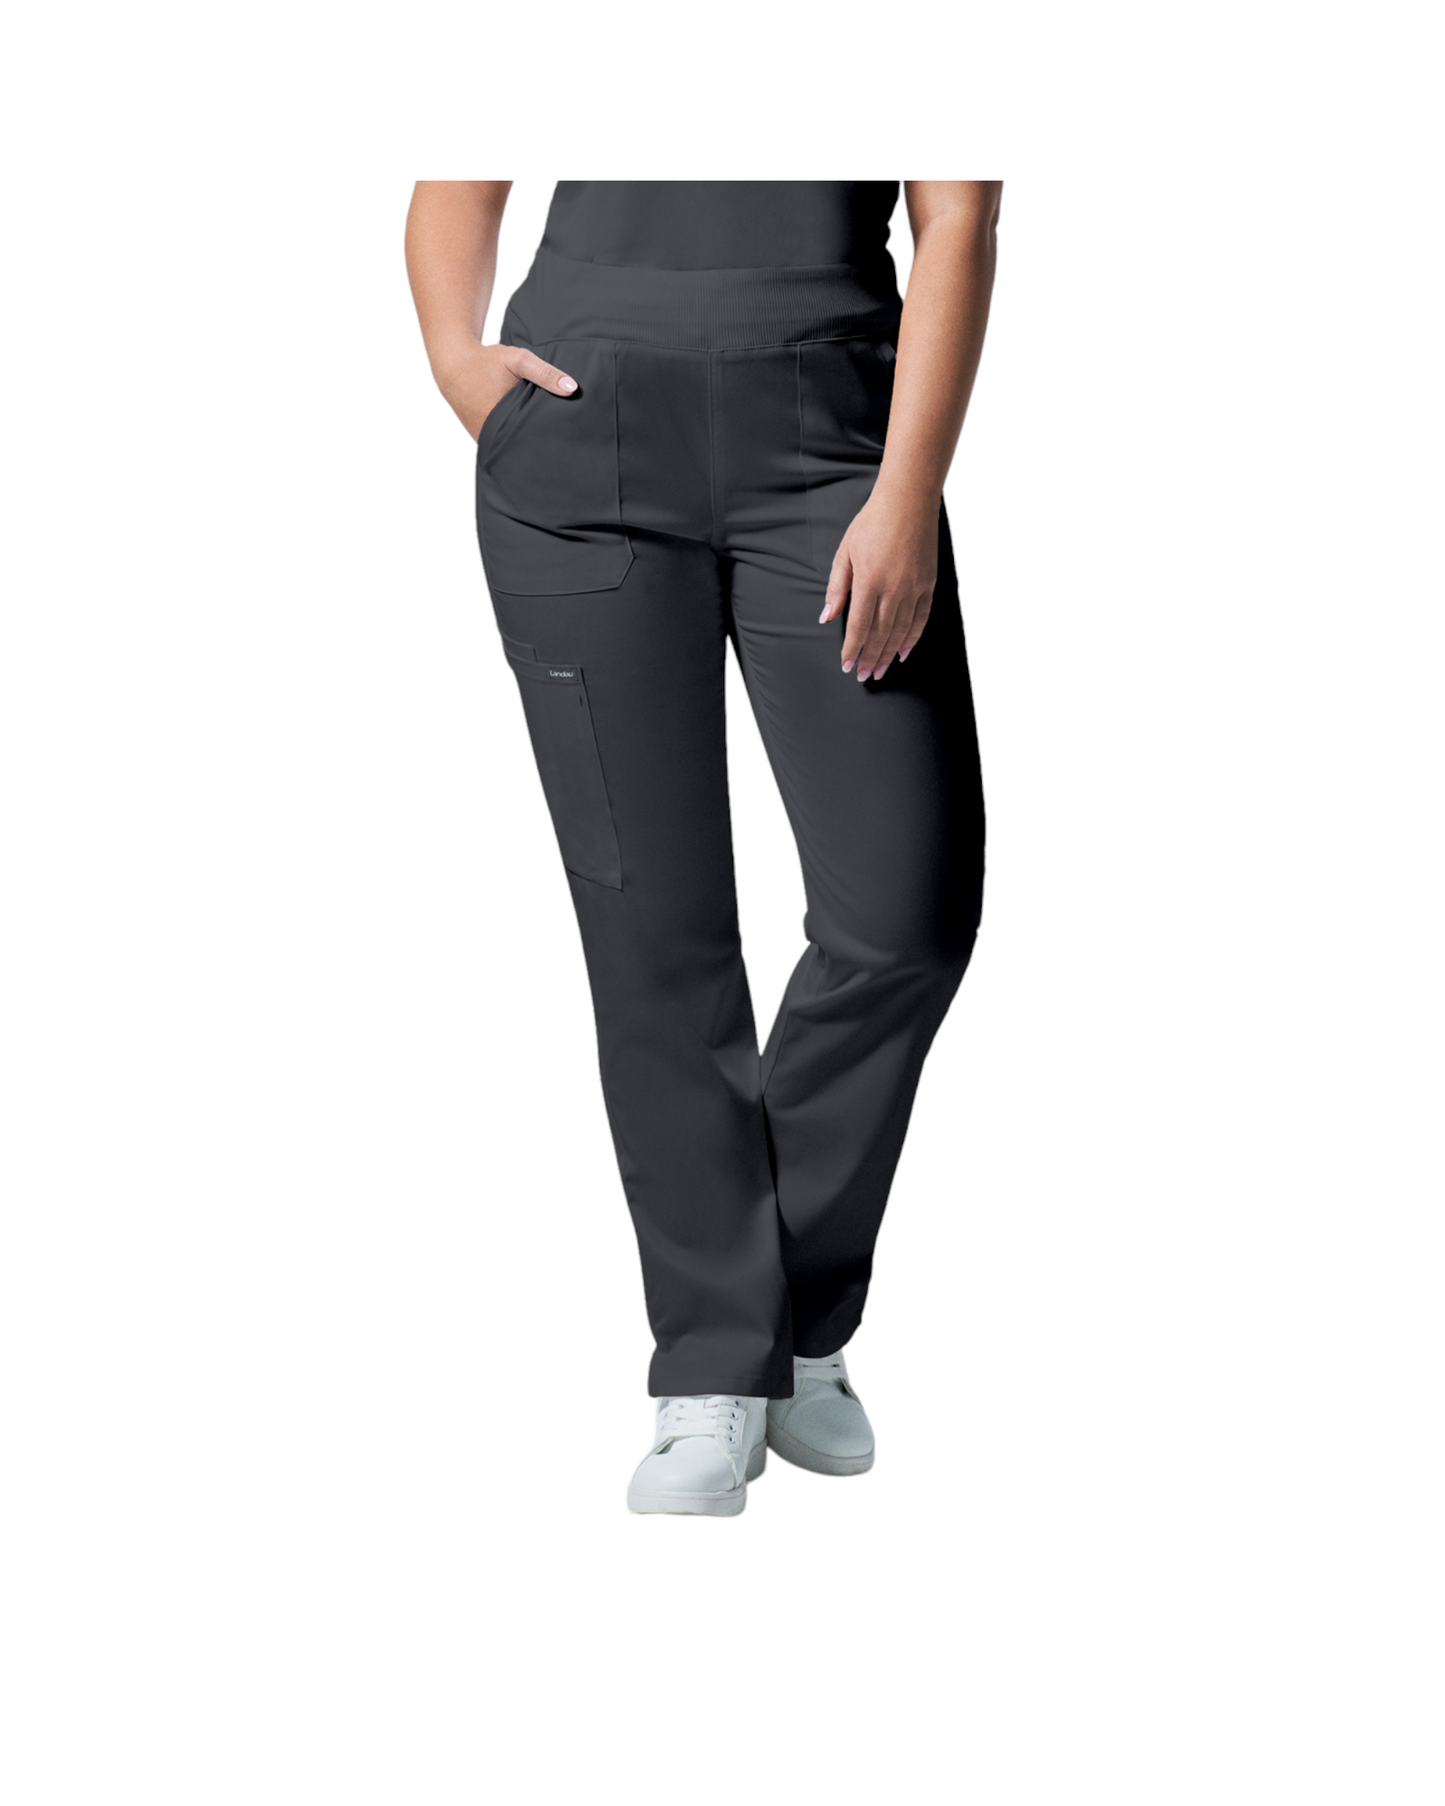 Pantalons  6 poches pour femmes Landau Proflex #LB405 couleur Graphite